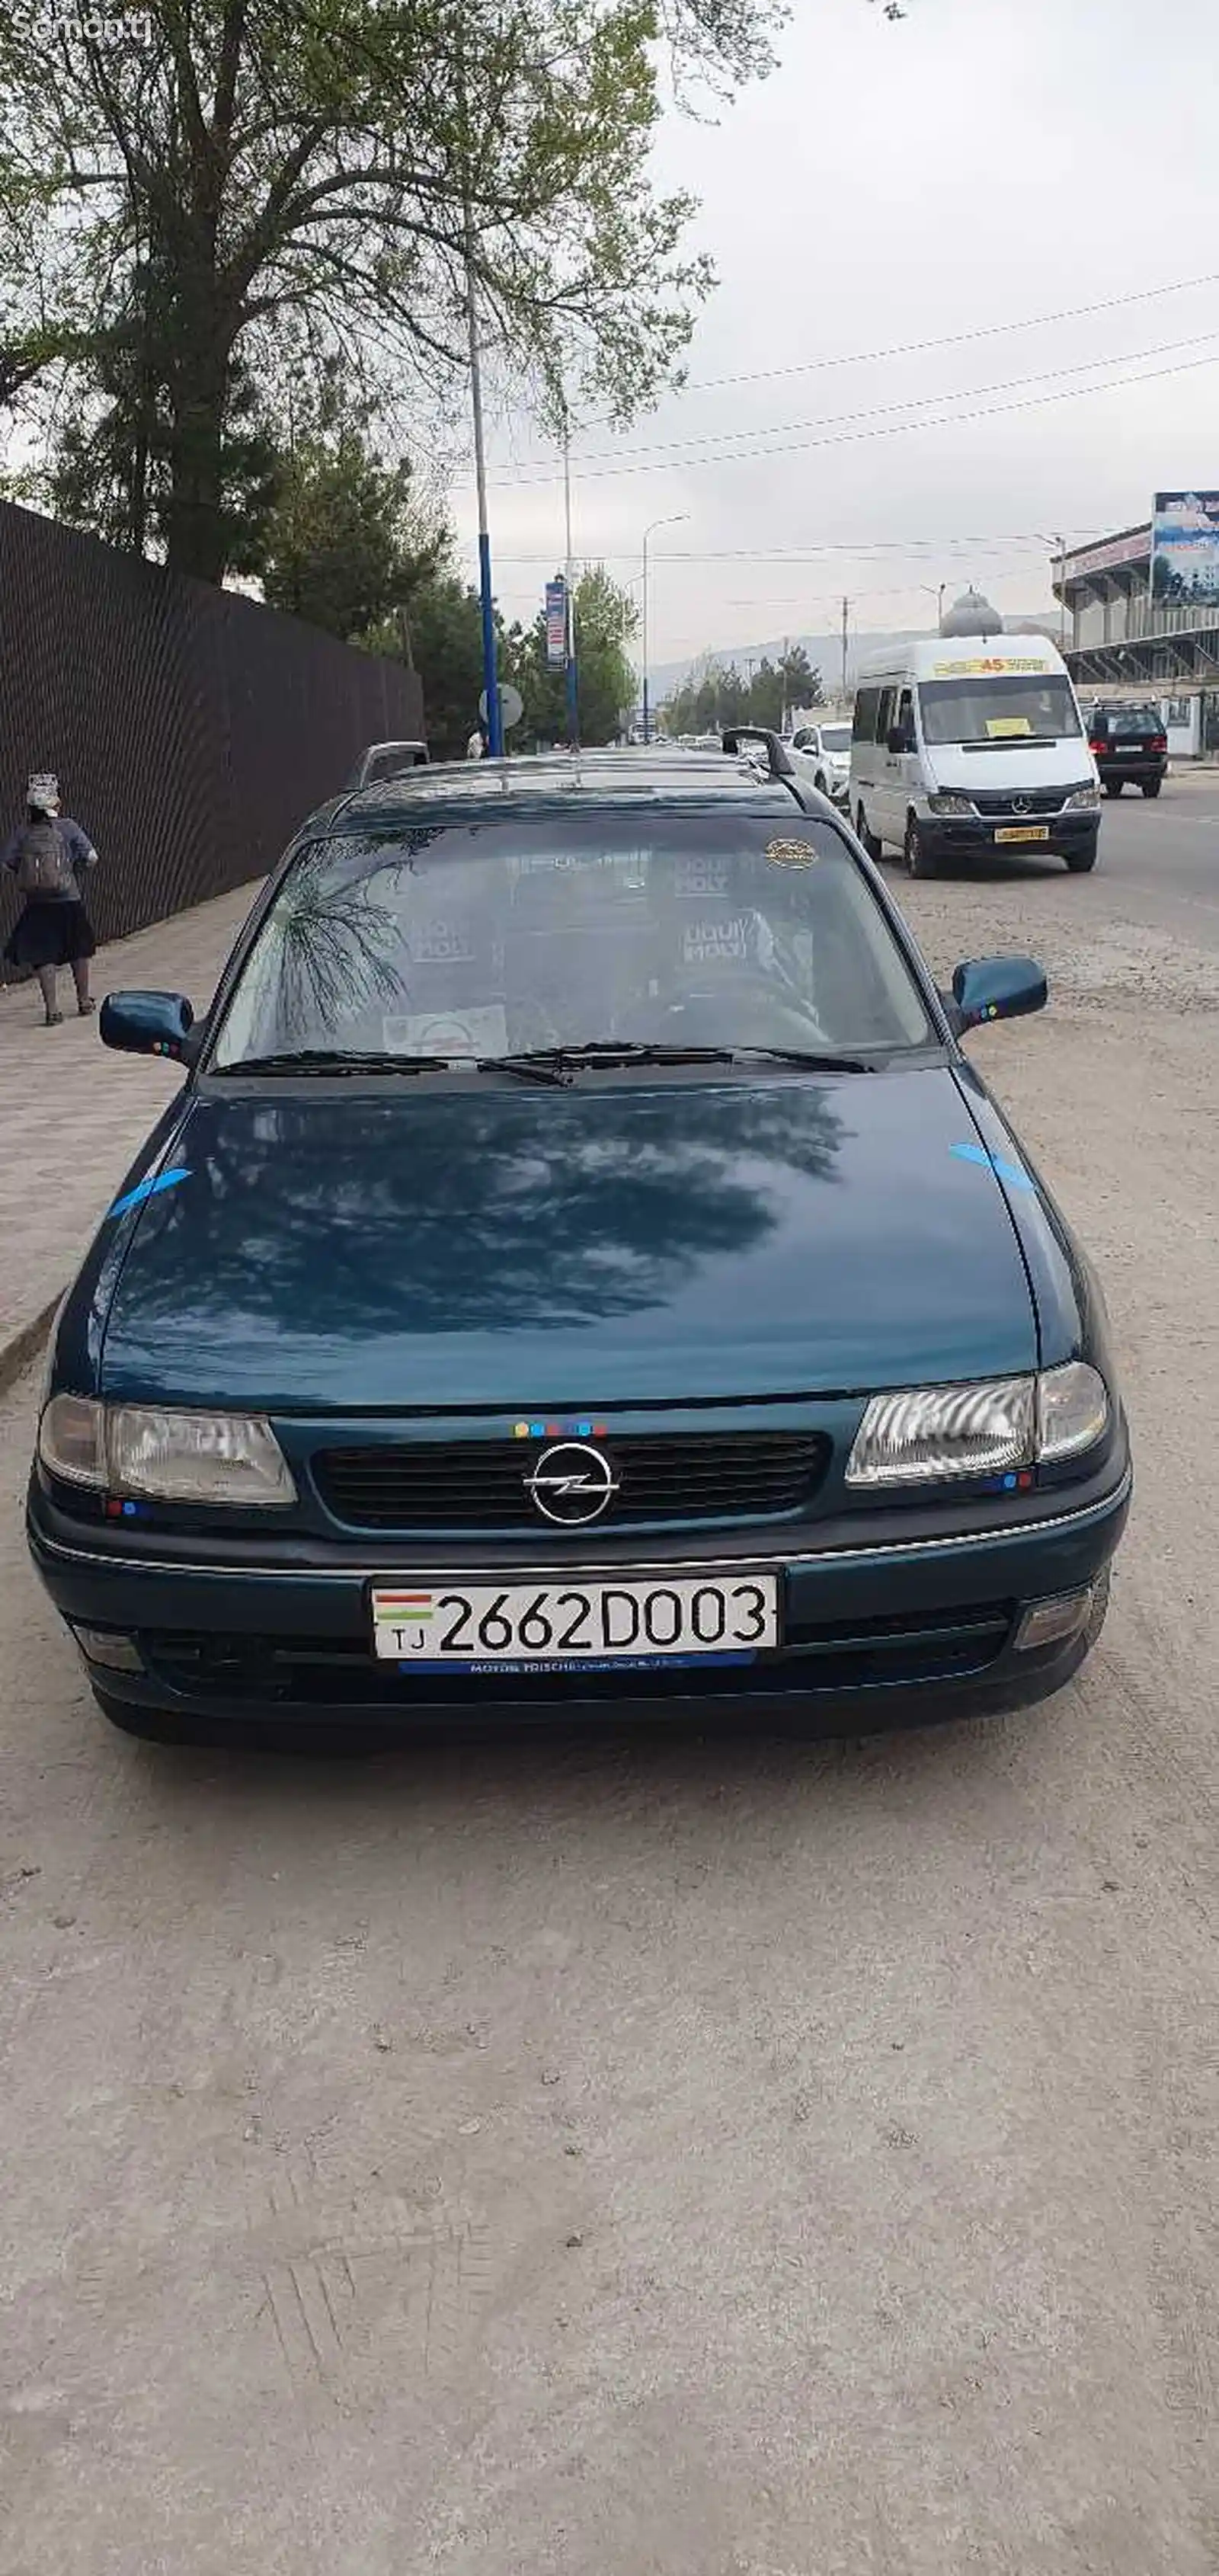 Opel Astra F, 1997-3